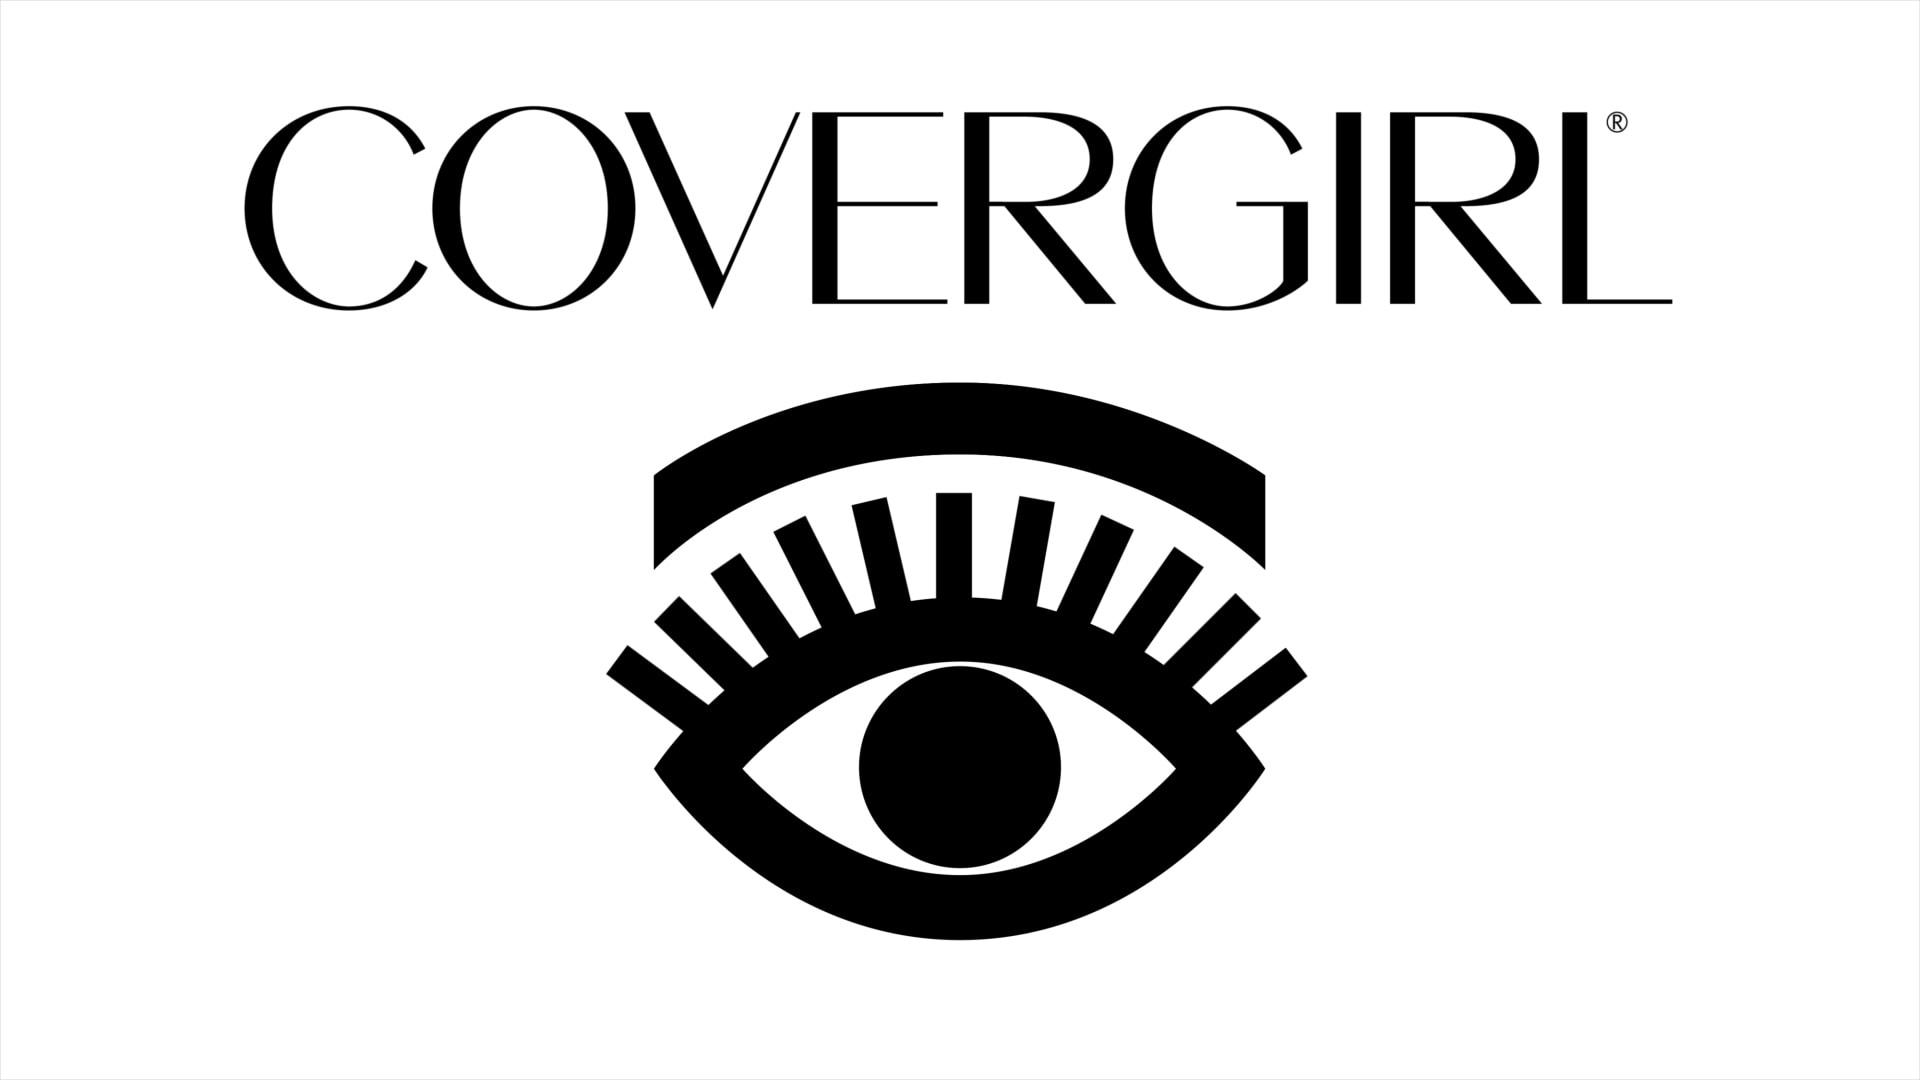 Covergirl Logo - Covergirl – So Lashy: TV Commercial & Event – Chris Bialkowski